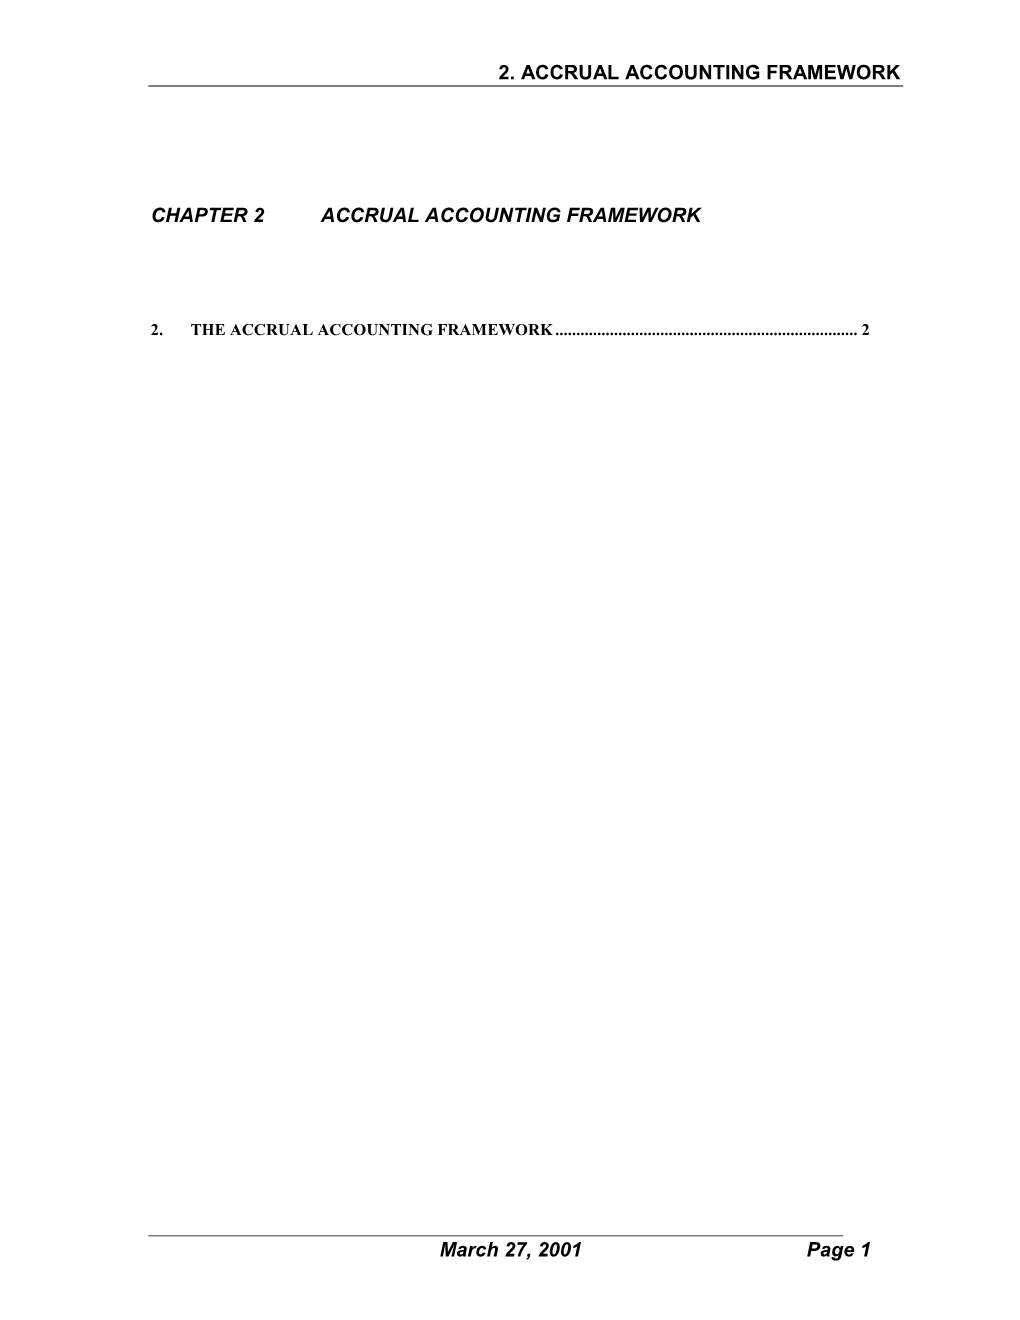 Accrual Accounting Framework